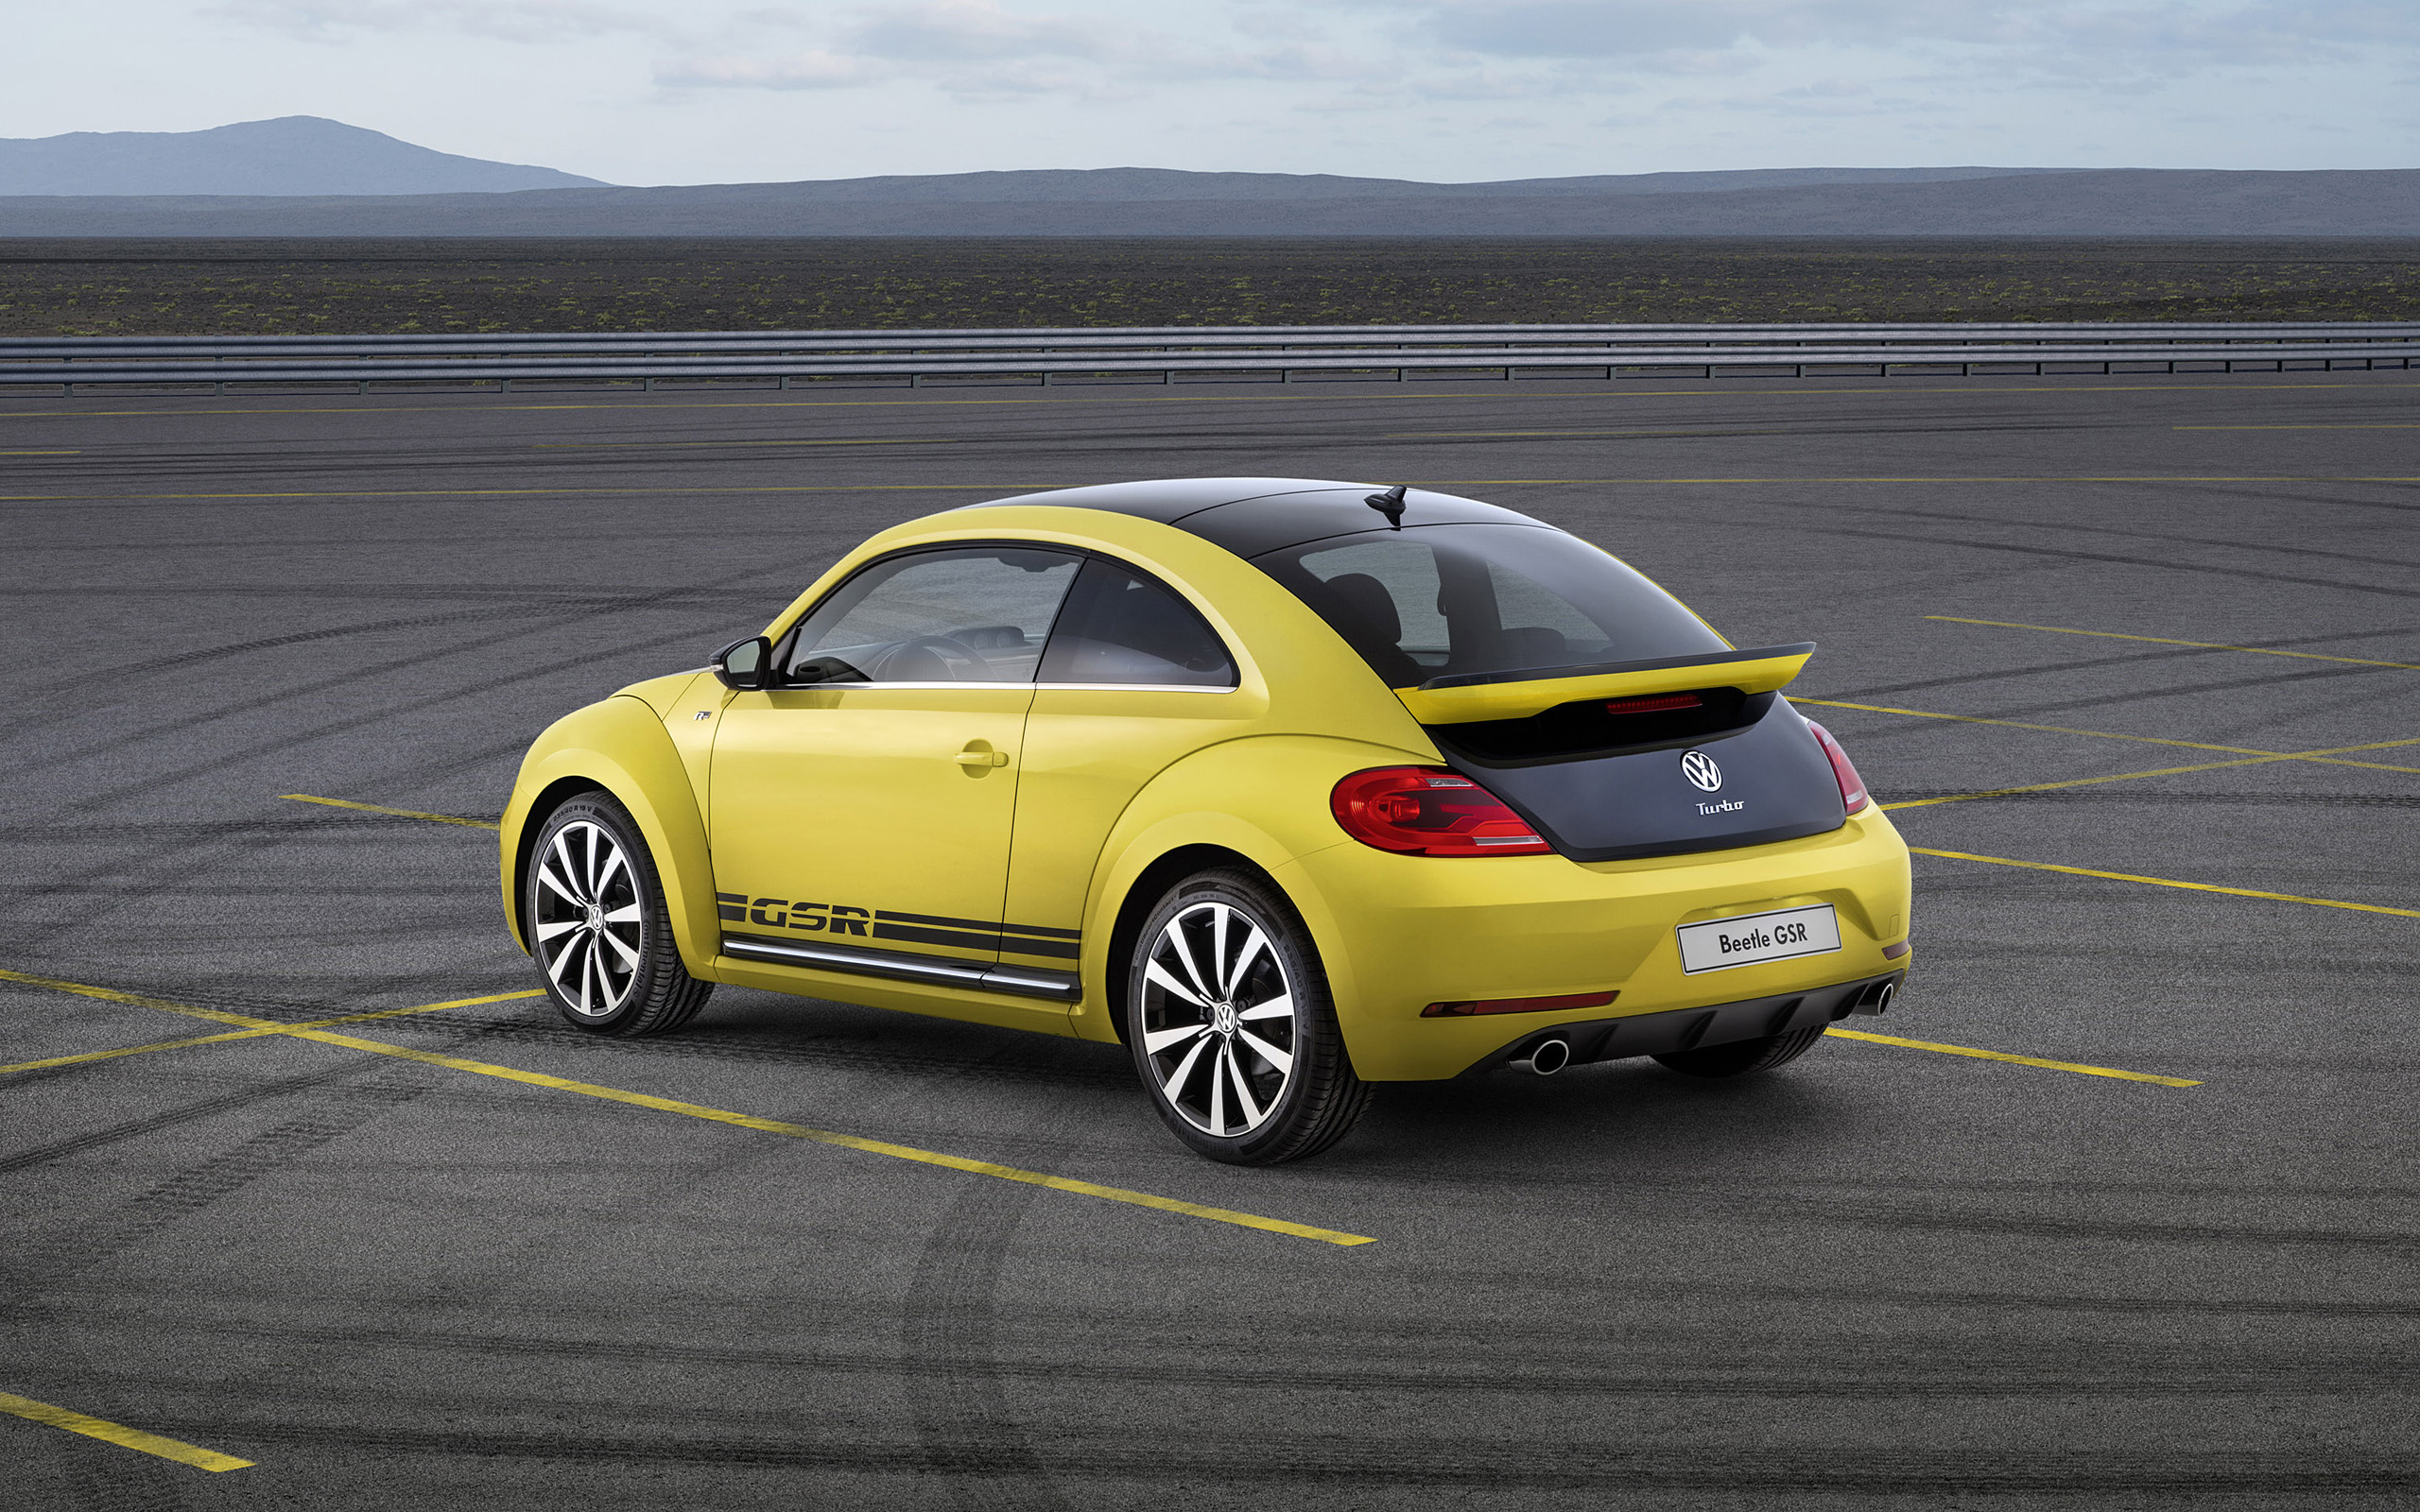  2013 Volkswagen Beetle GSR Wallpaper.